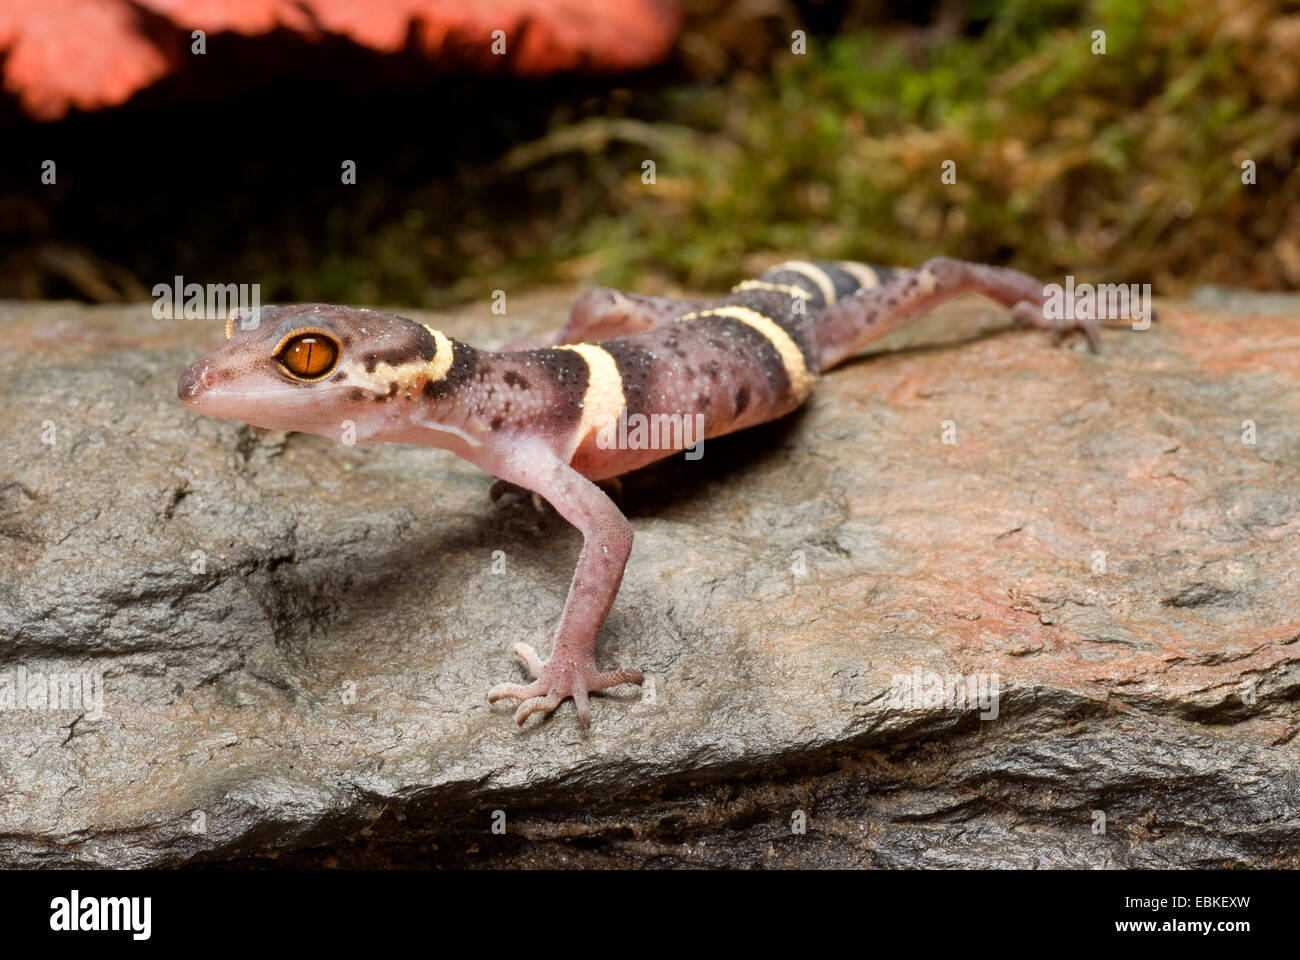 Japanese Ground Gecko (Goniurosaurus hainanensis), on a stone Stock Photo